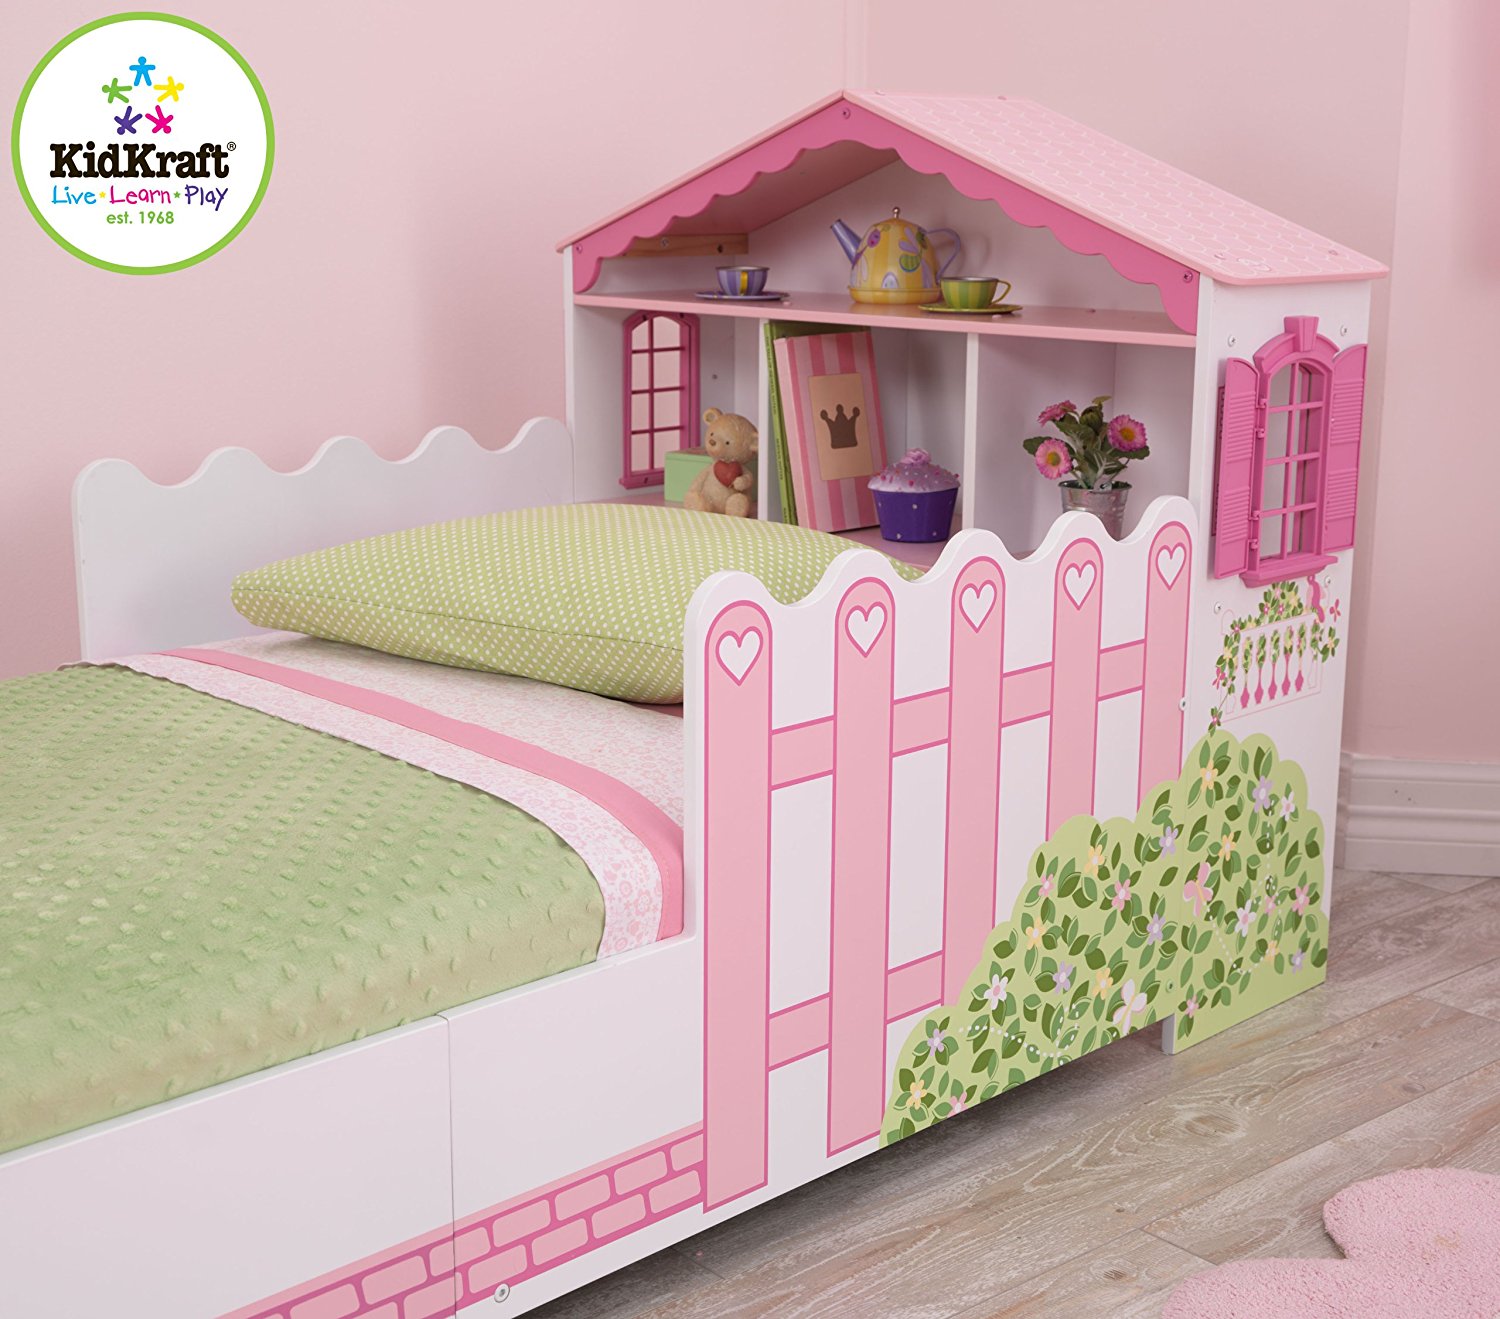 Детская кровать Кукольный домик, с полочками  